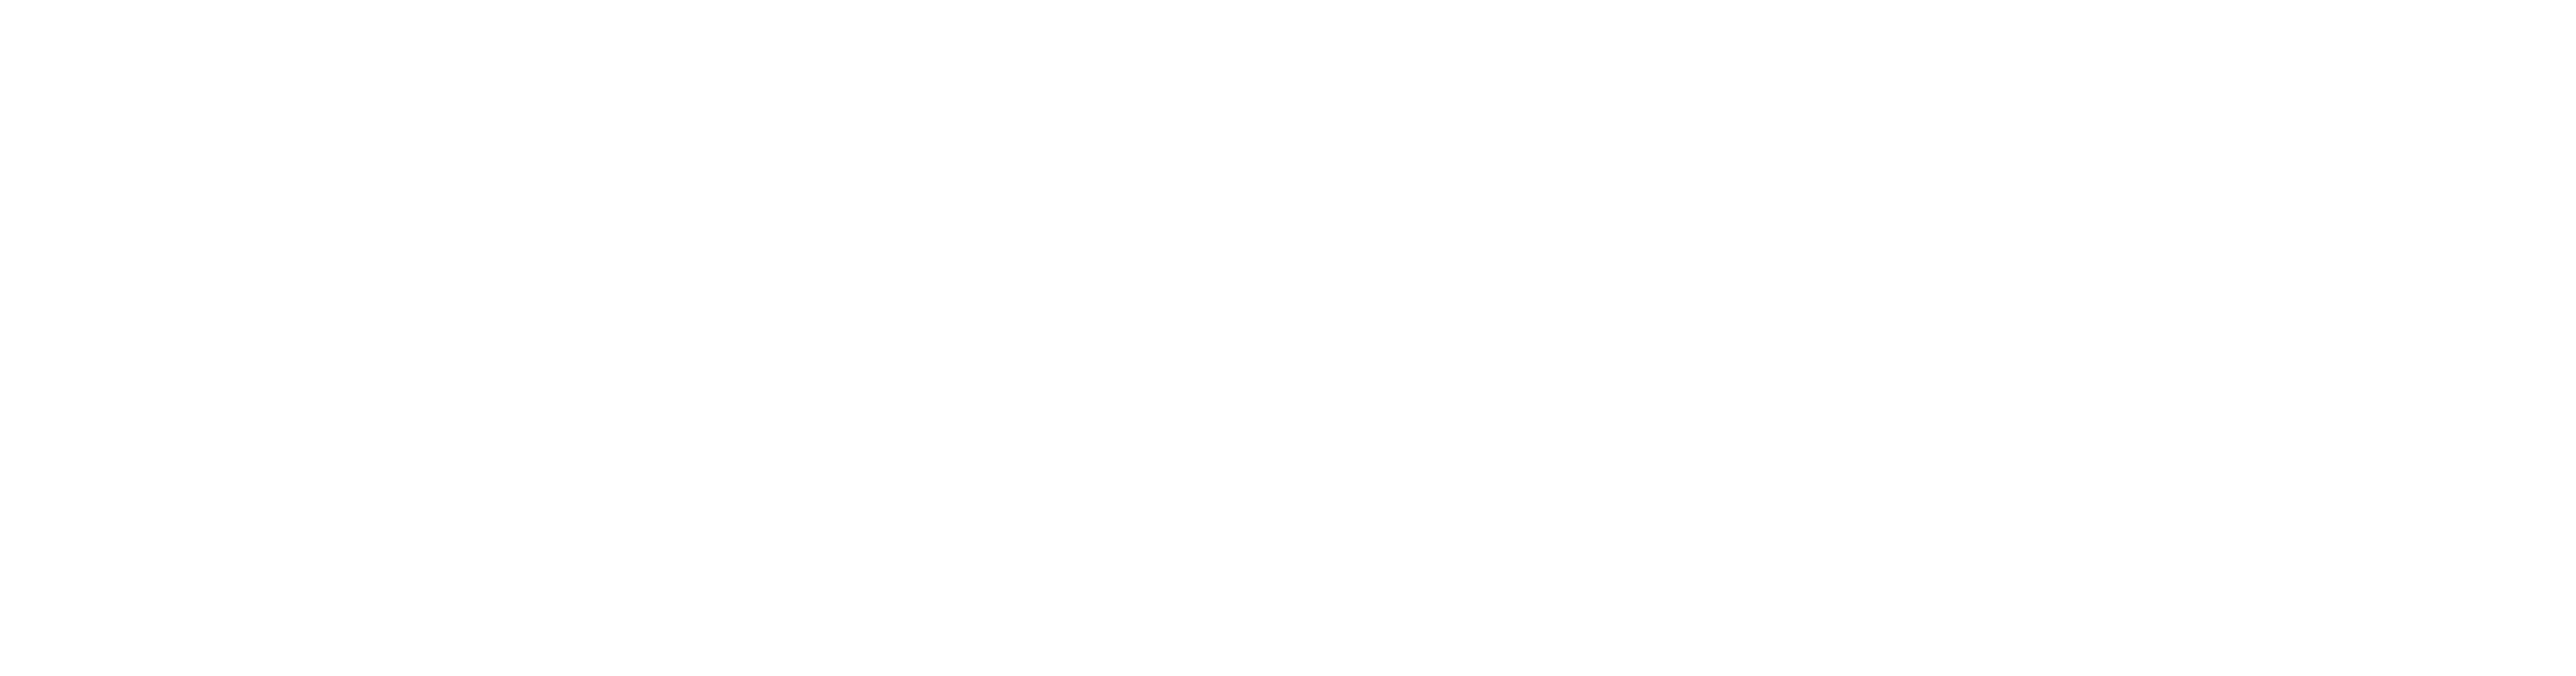 longrich